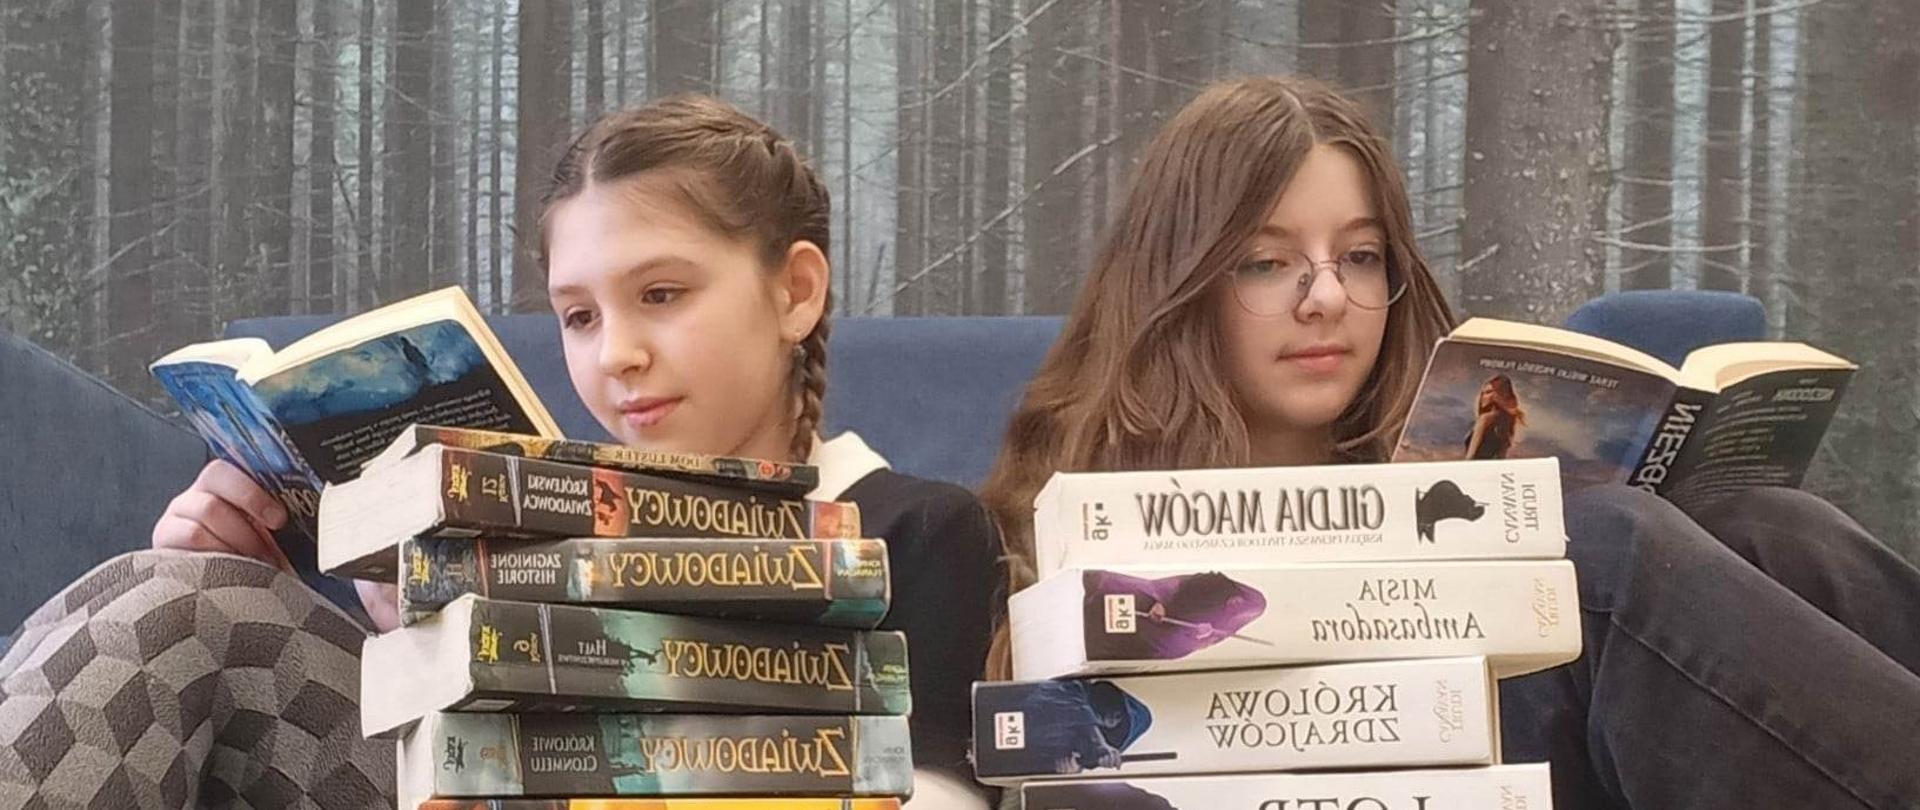 na tle lasu dwie postacie dziewcząt czytających książki, przed nimi ułożone stosy książek